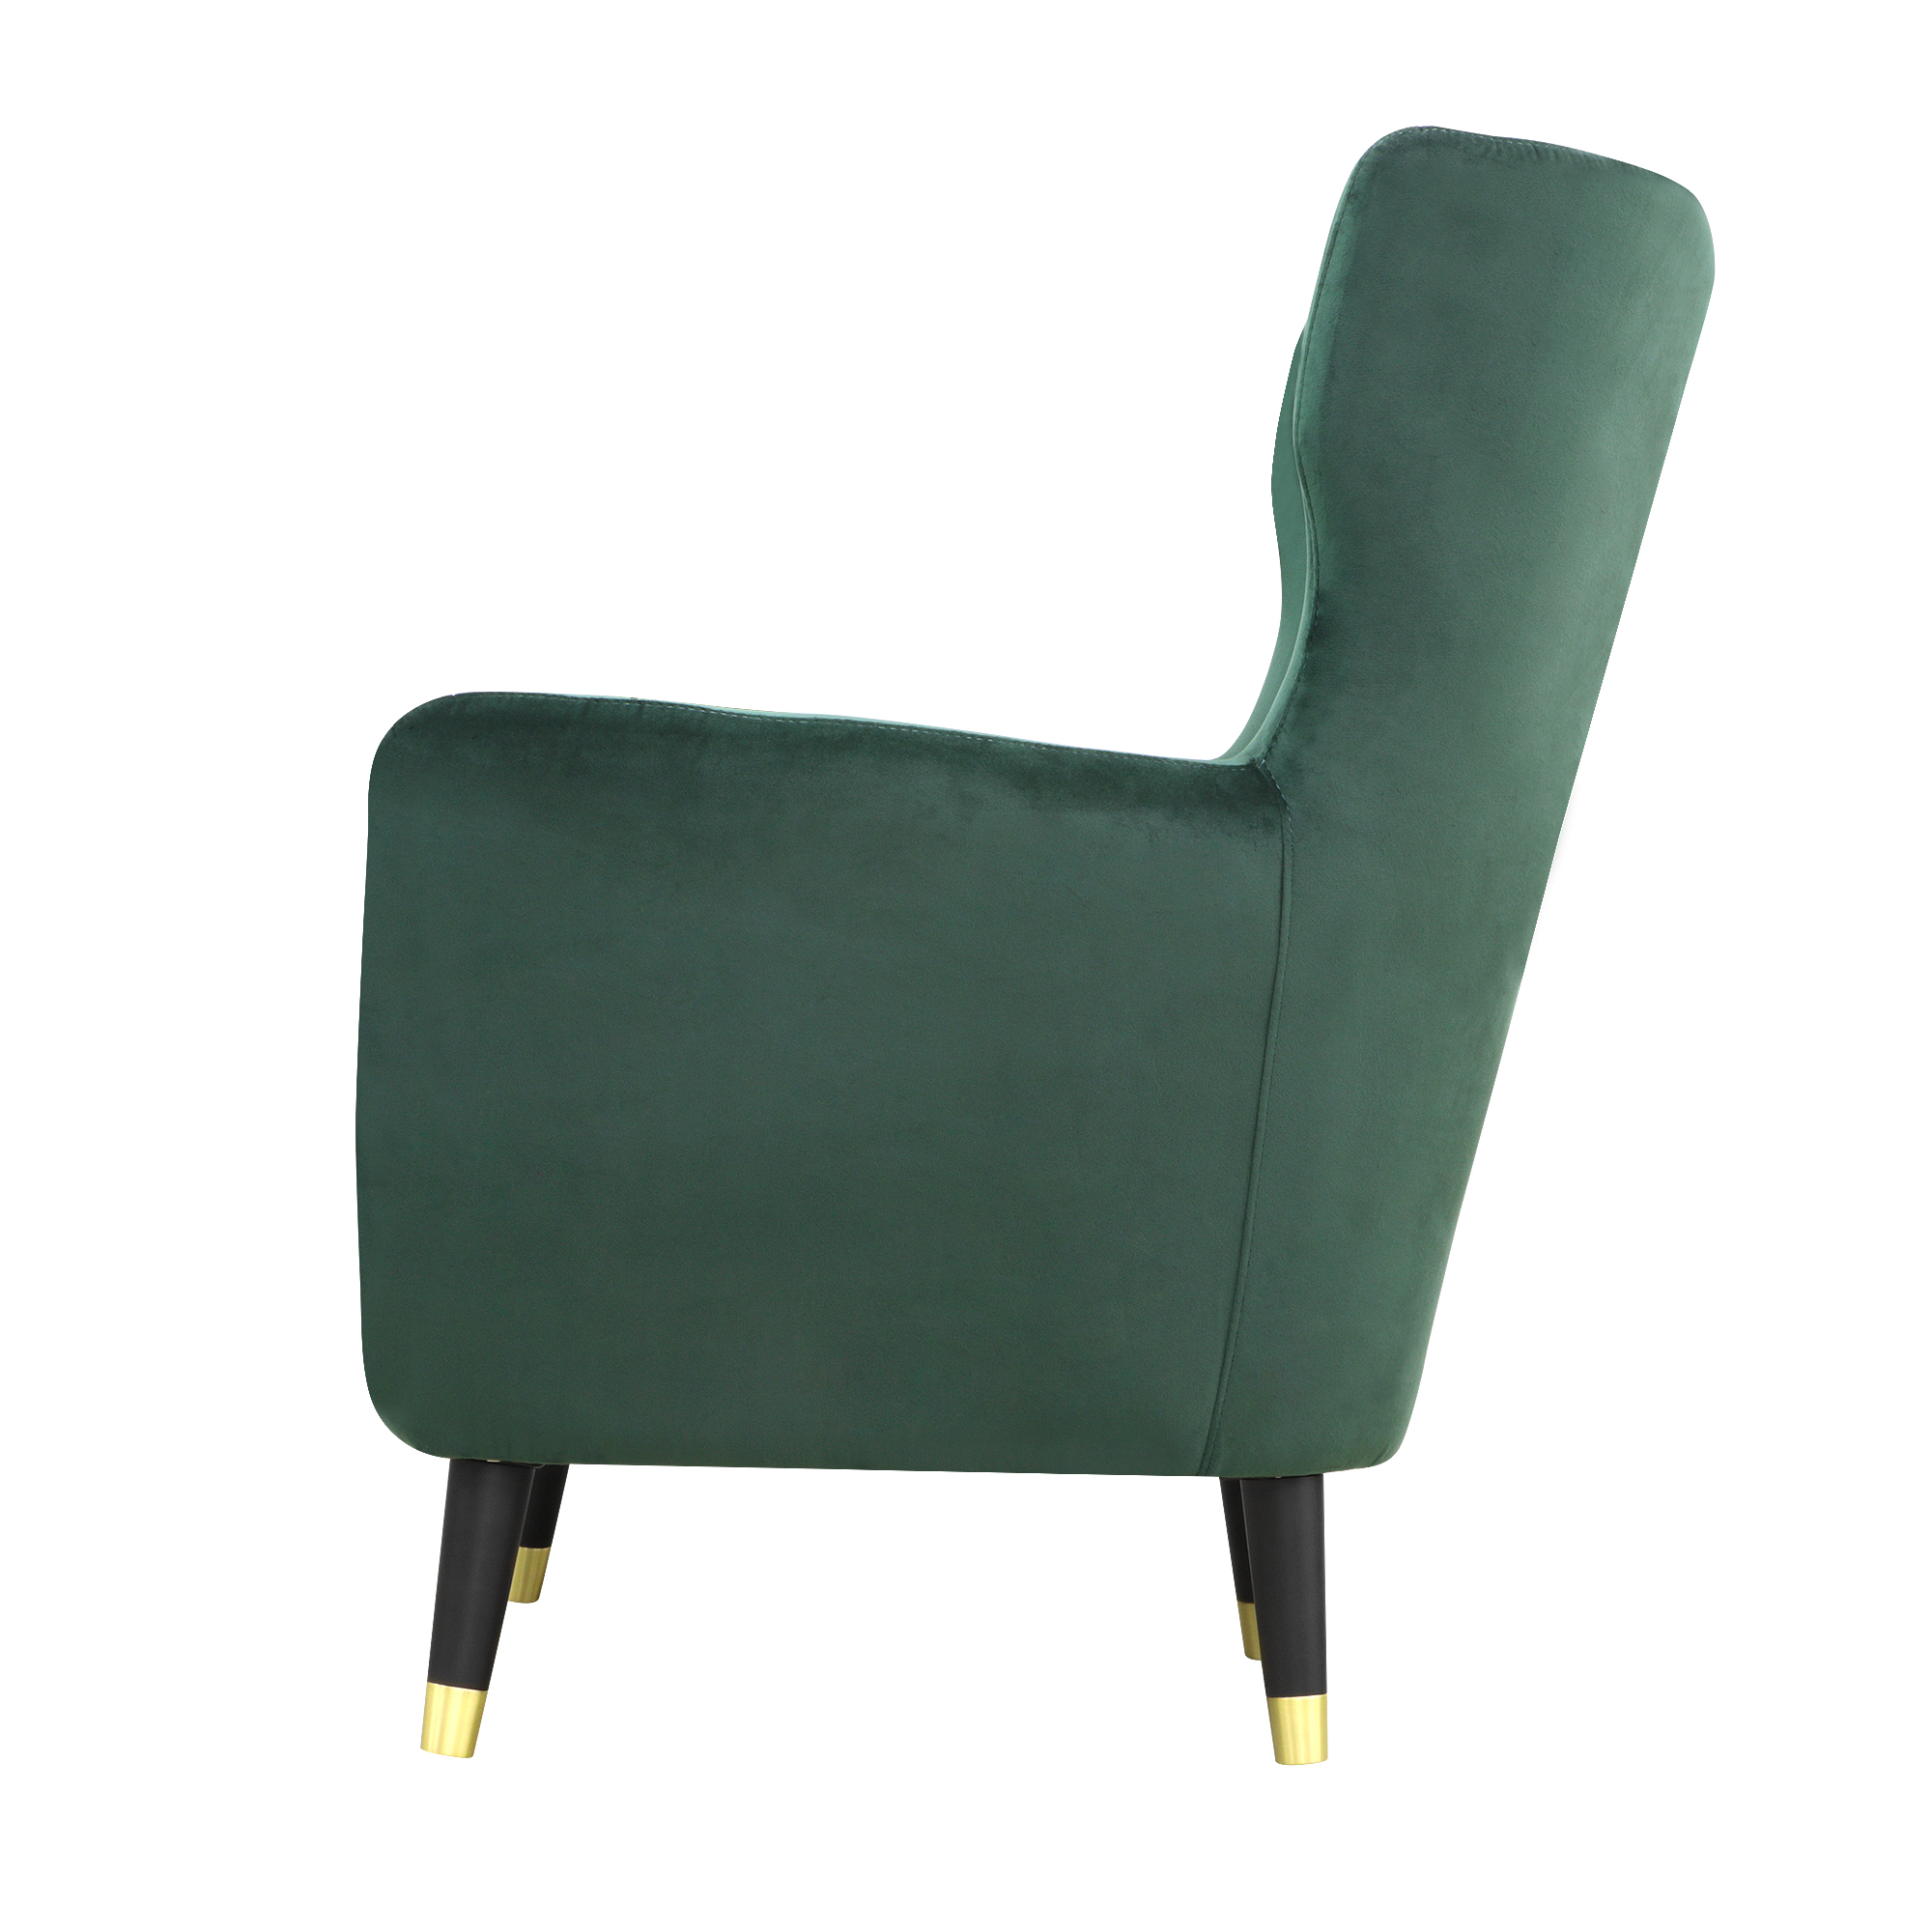 Кресло Liyasi элфи зеленое 80x81x93cm - фото 3